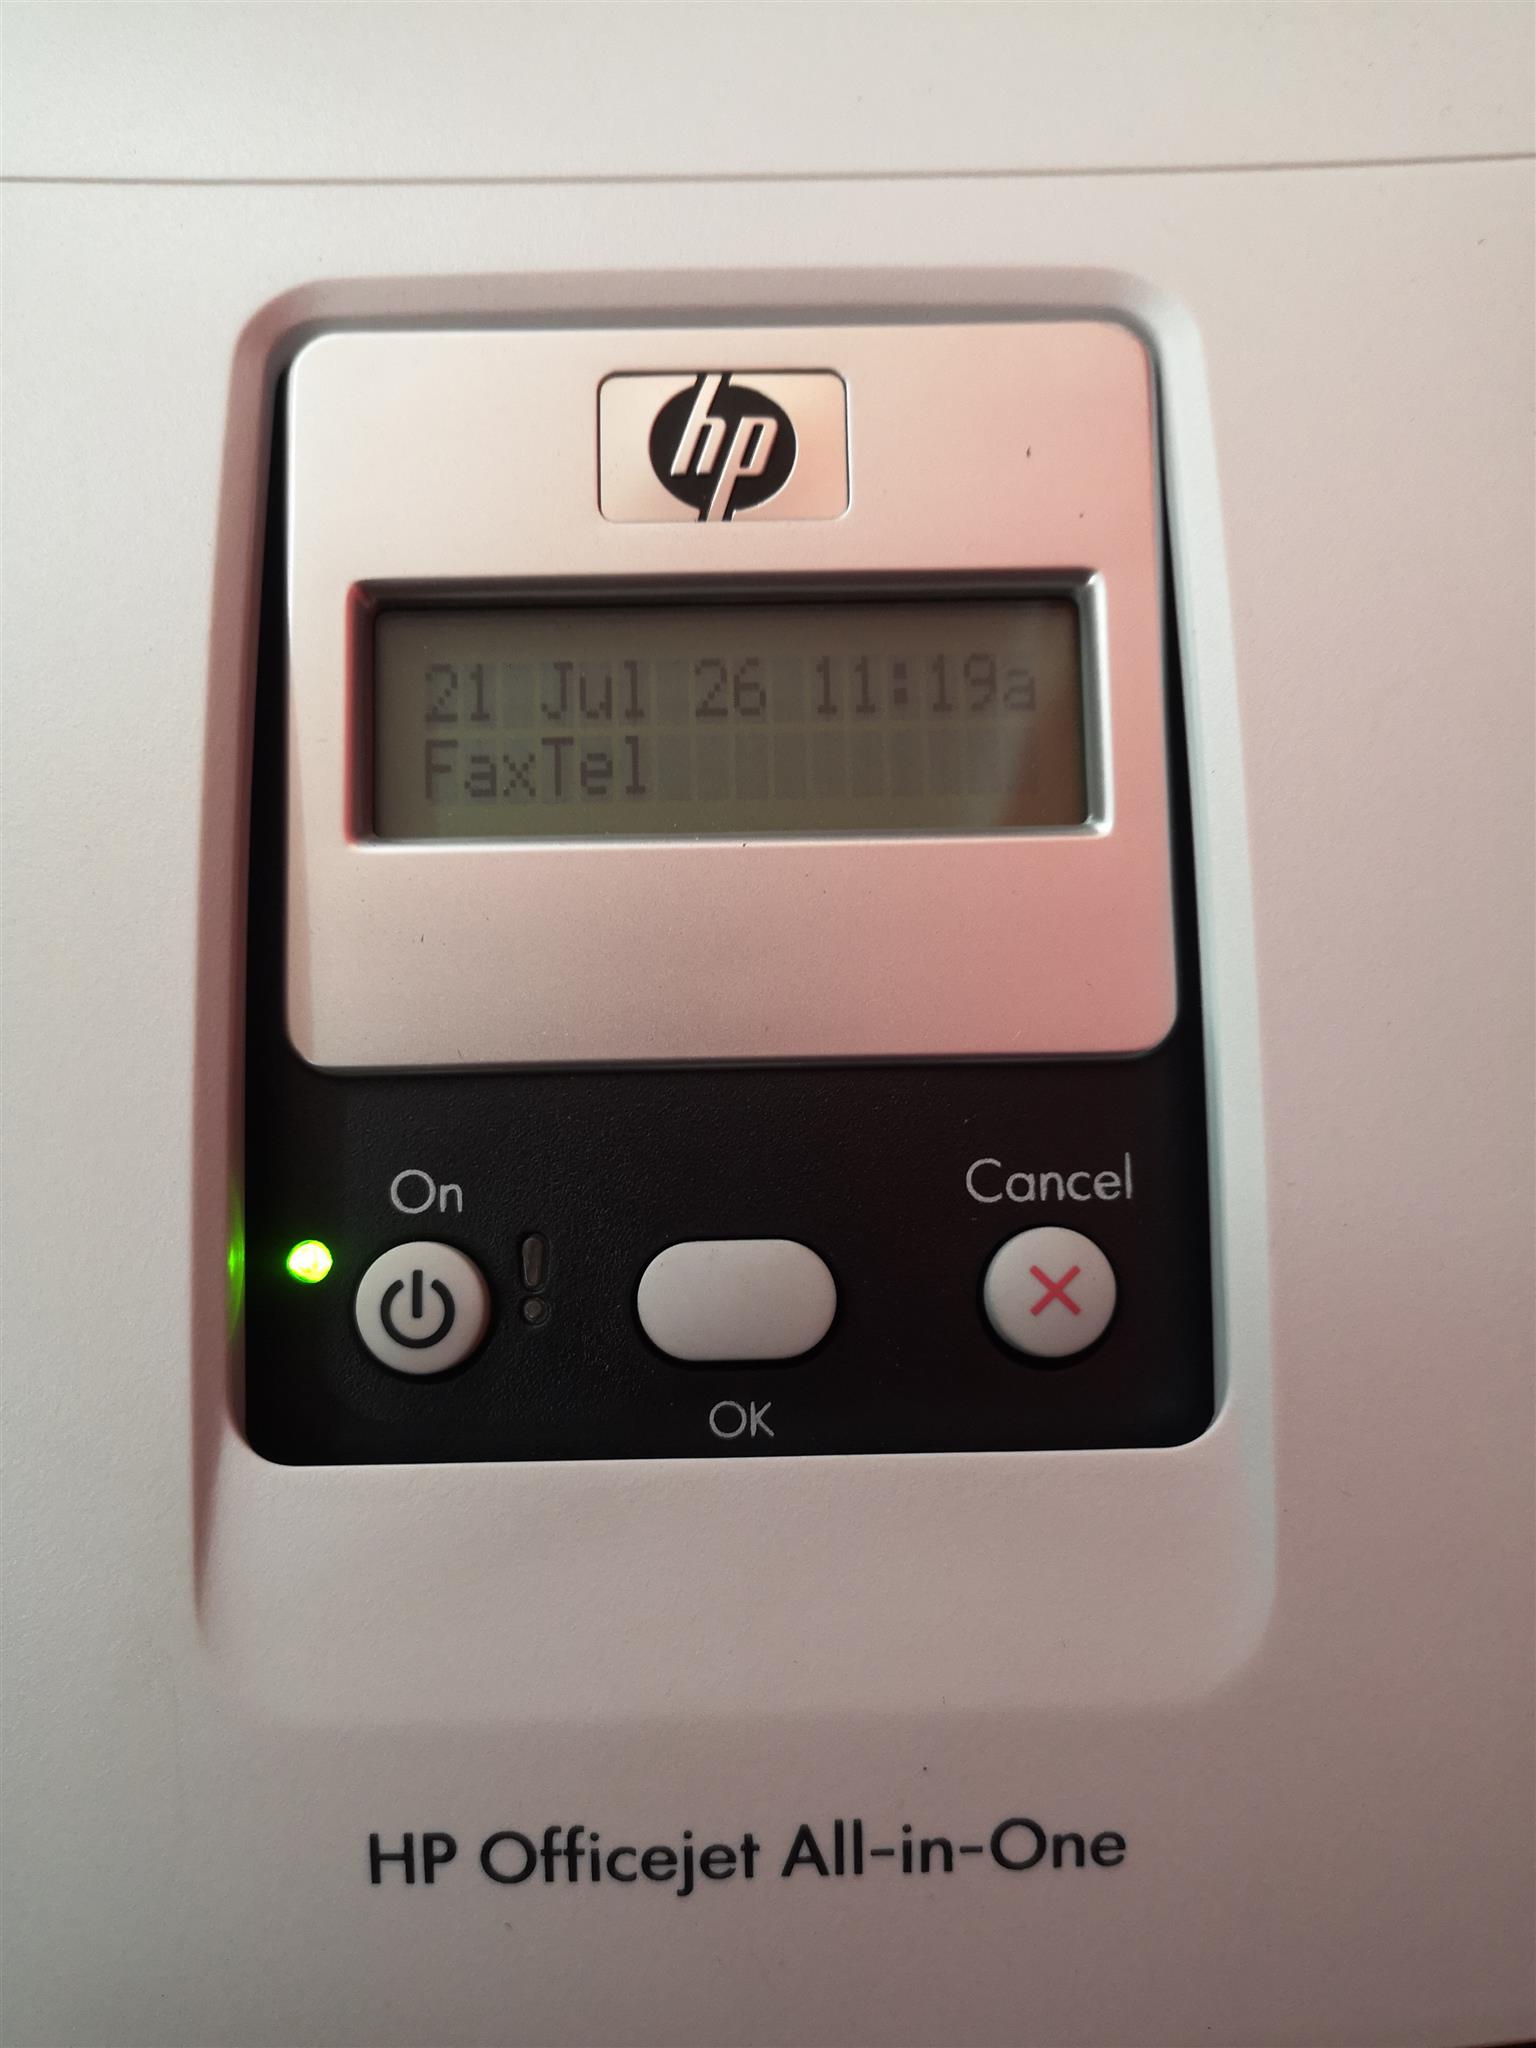 HP Colour Printer & Fax Machine R599